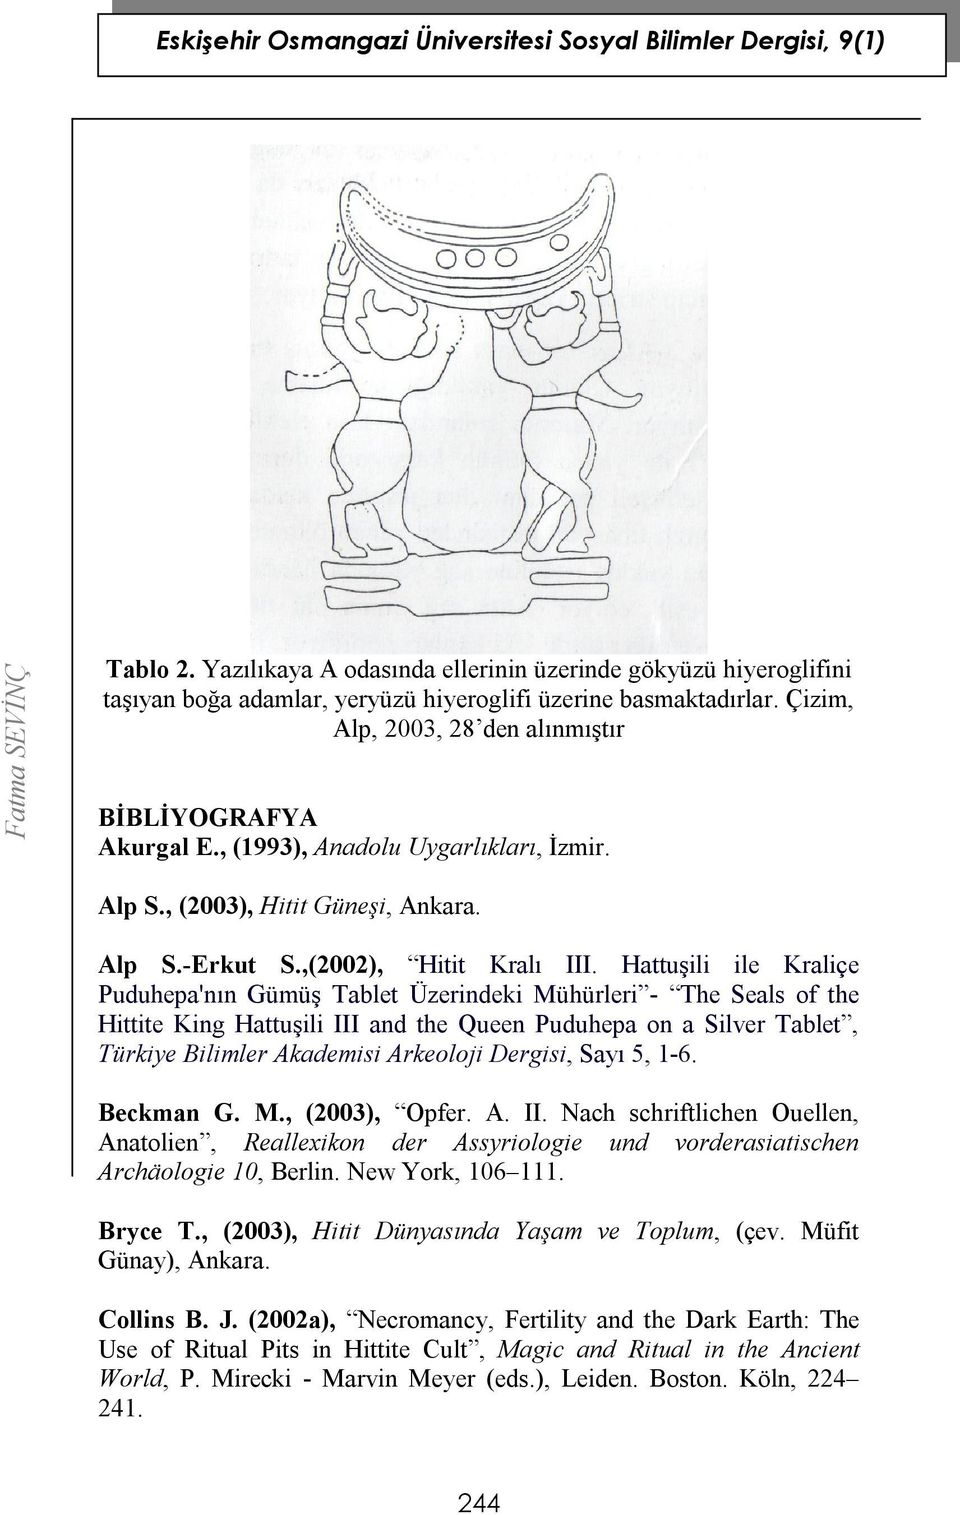 Hattuşili ile Kraliçe Puduhepa'nın Gümüş Tablet Üzerindeki Mühürleri - The Seals of the Hittite King Hattuşili III and the Queen Puduhepa on a Silver Tablet, Türkiye Bilimler Akademisi Arkeoloji